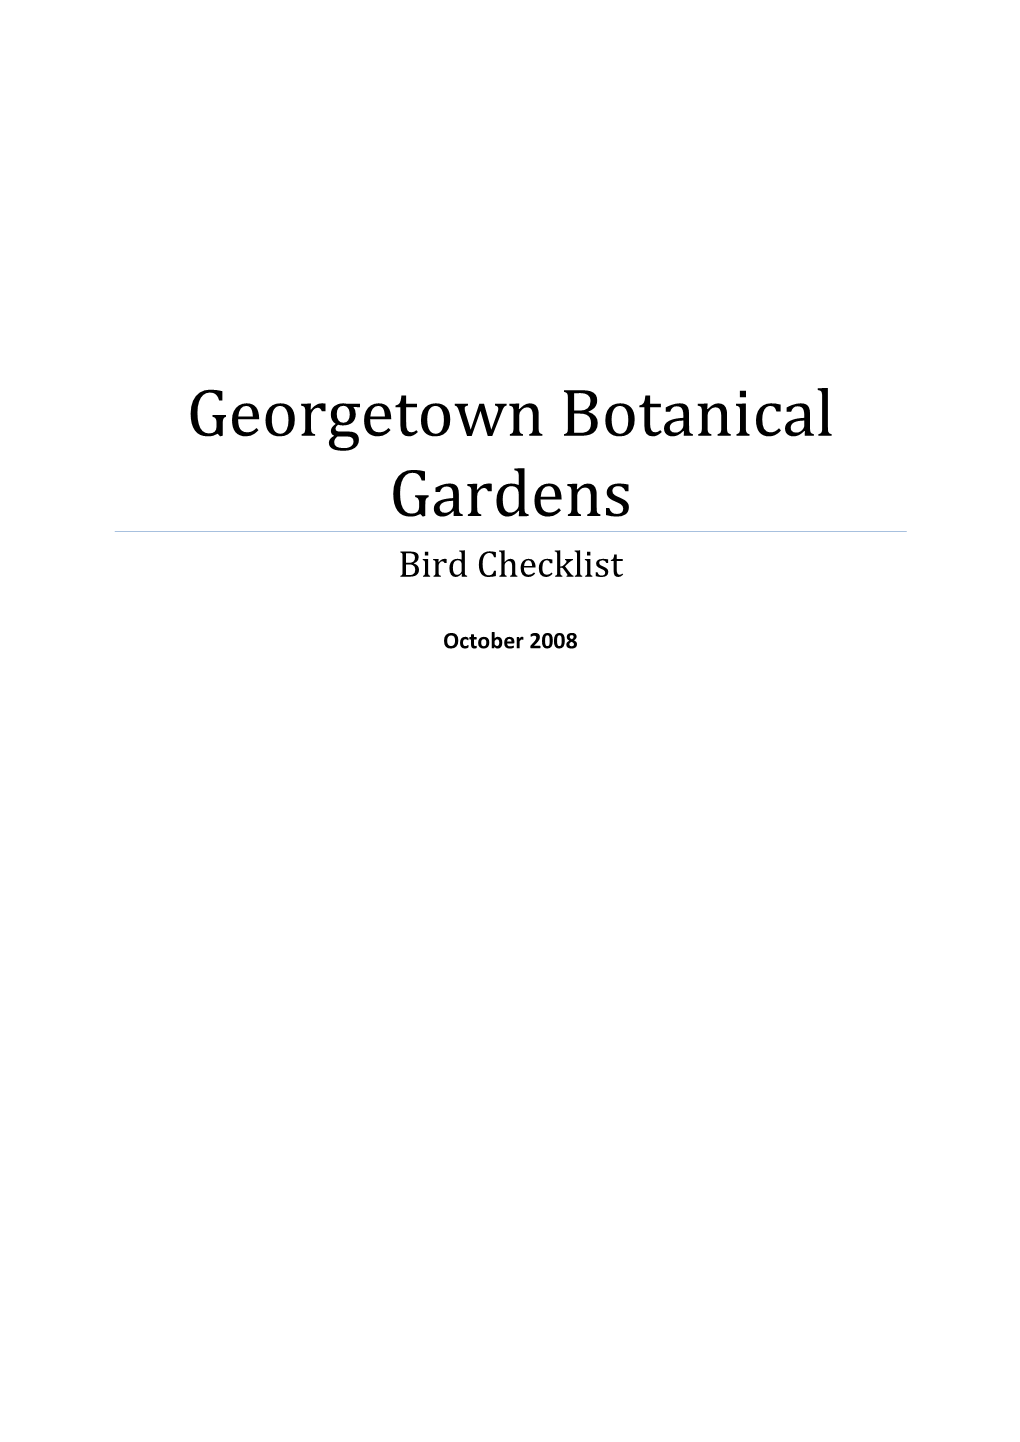 Georgetown Botanical Gardens Bird Checklist